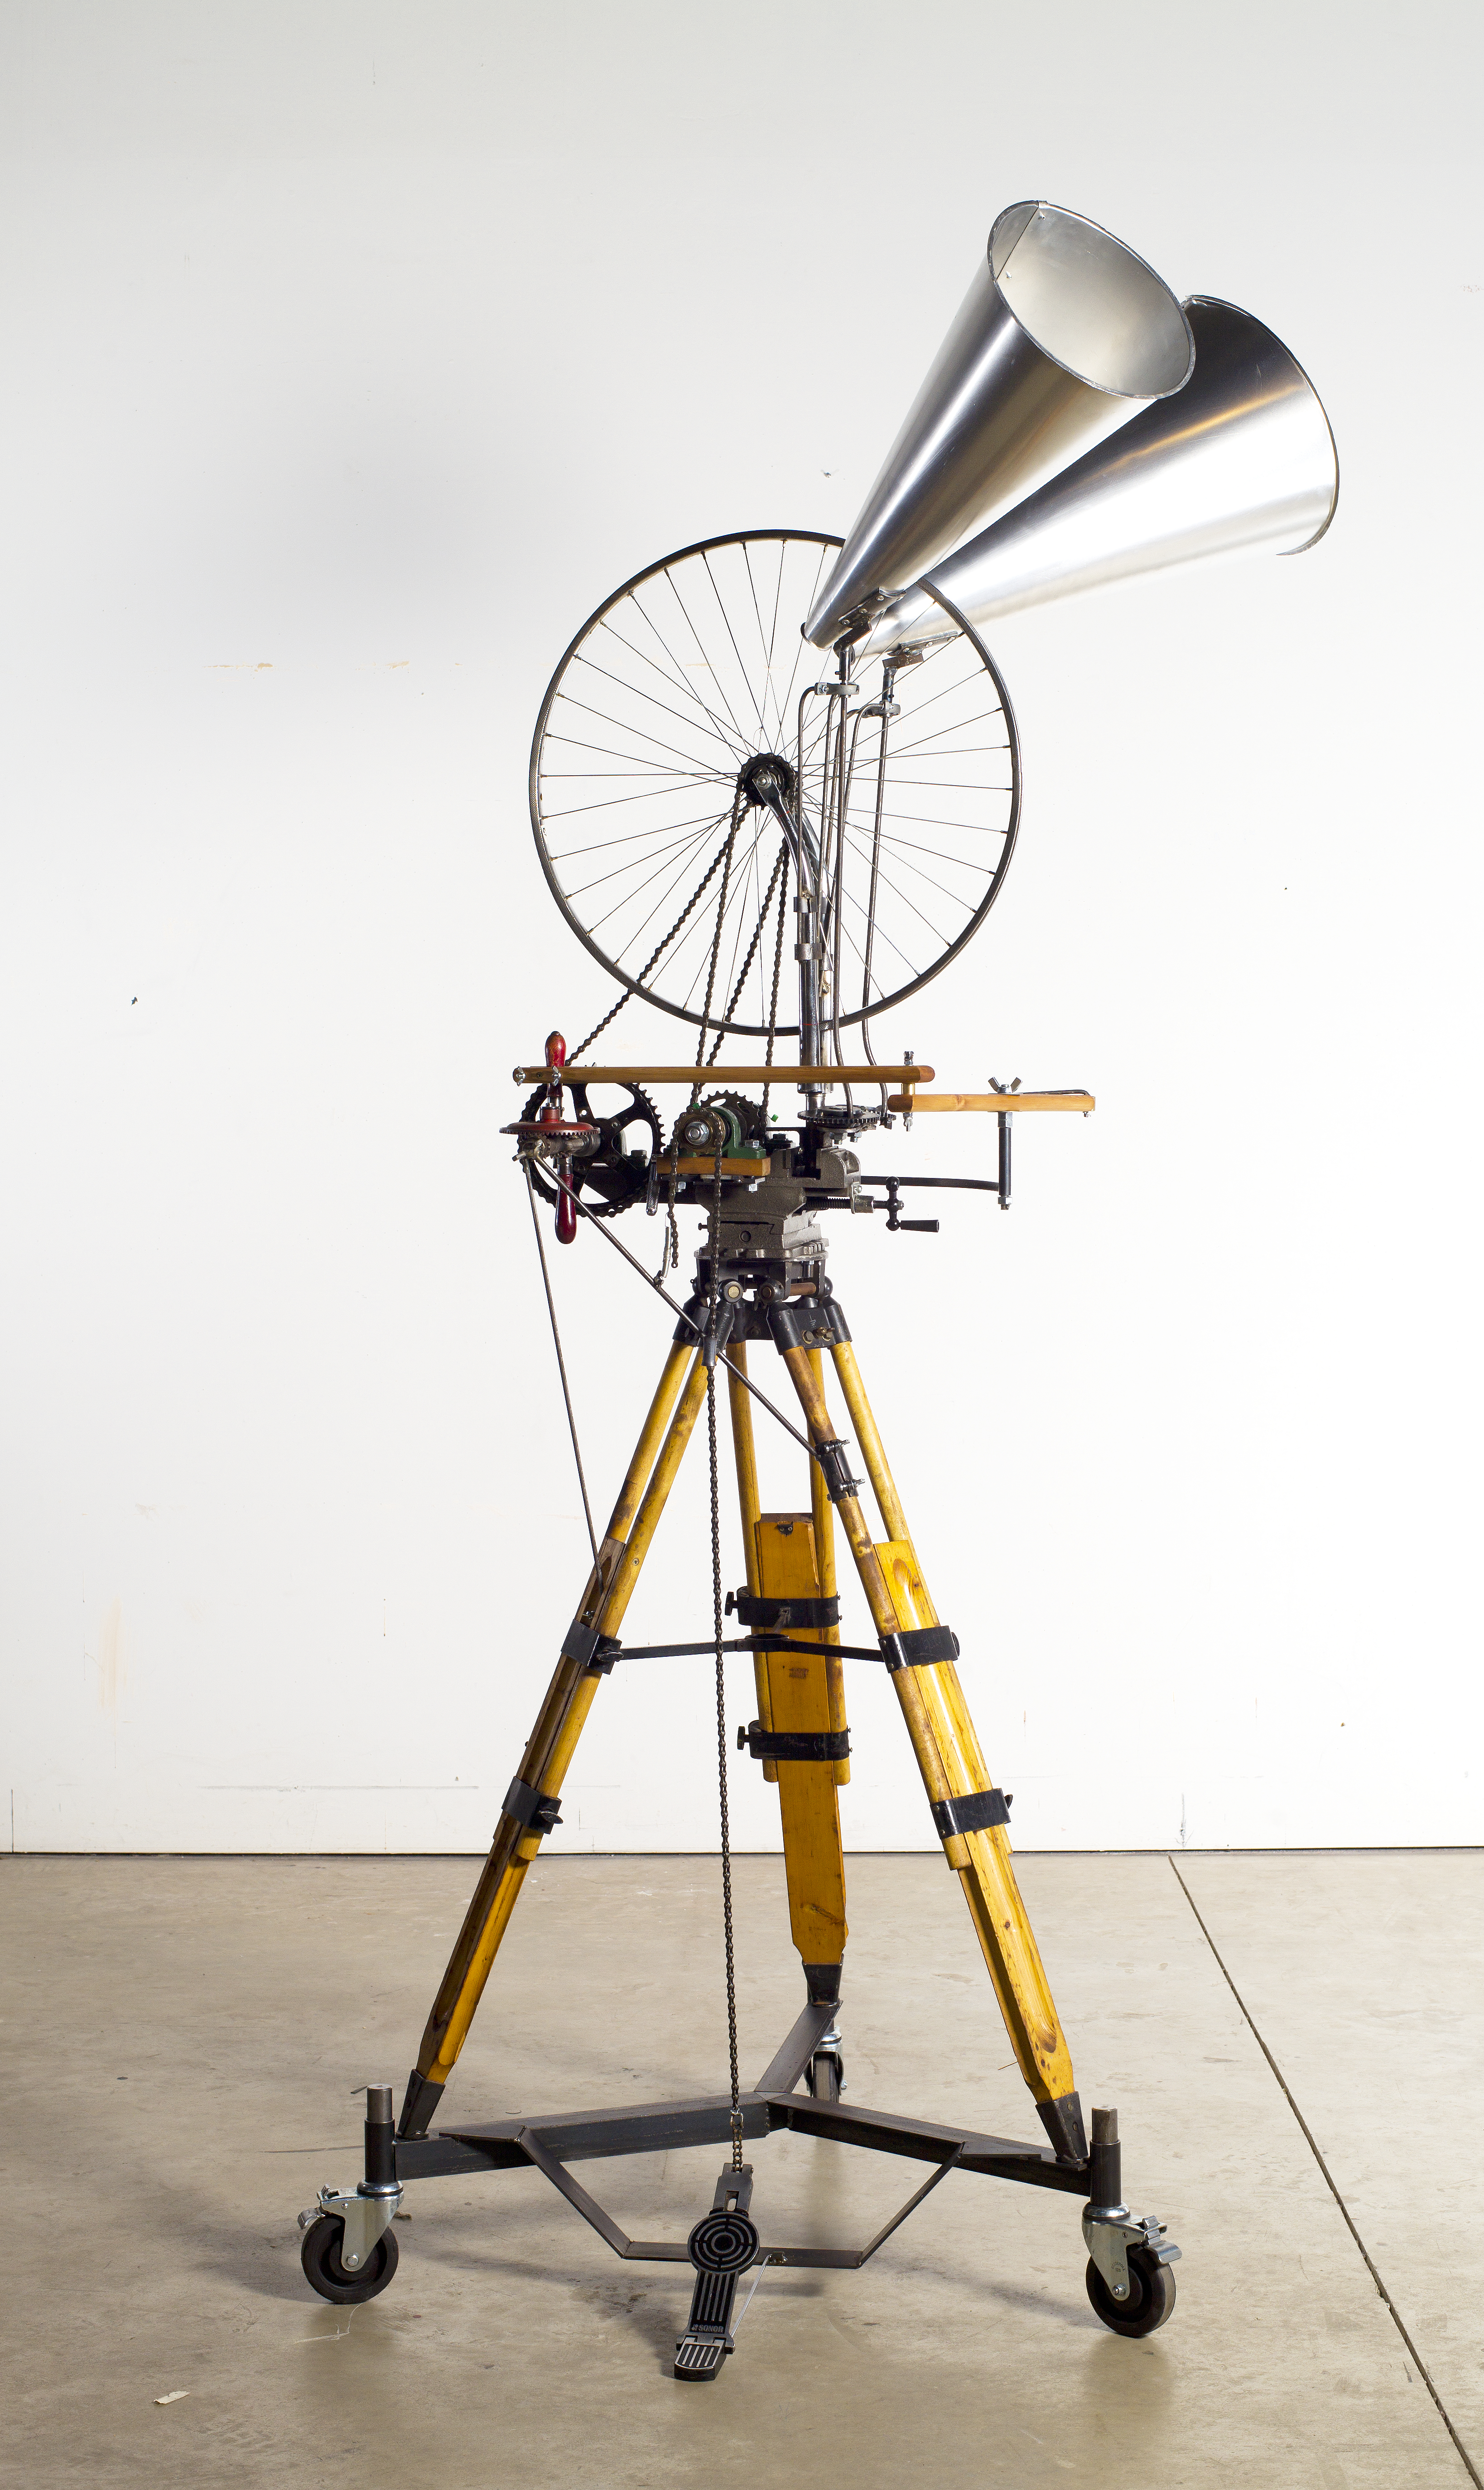 Bicycle Wheel II